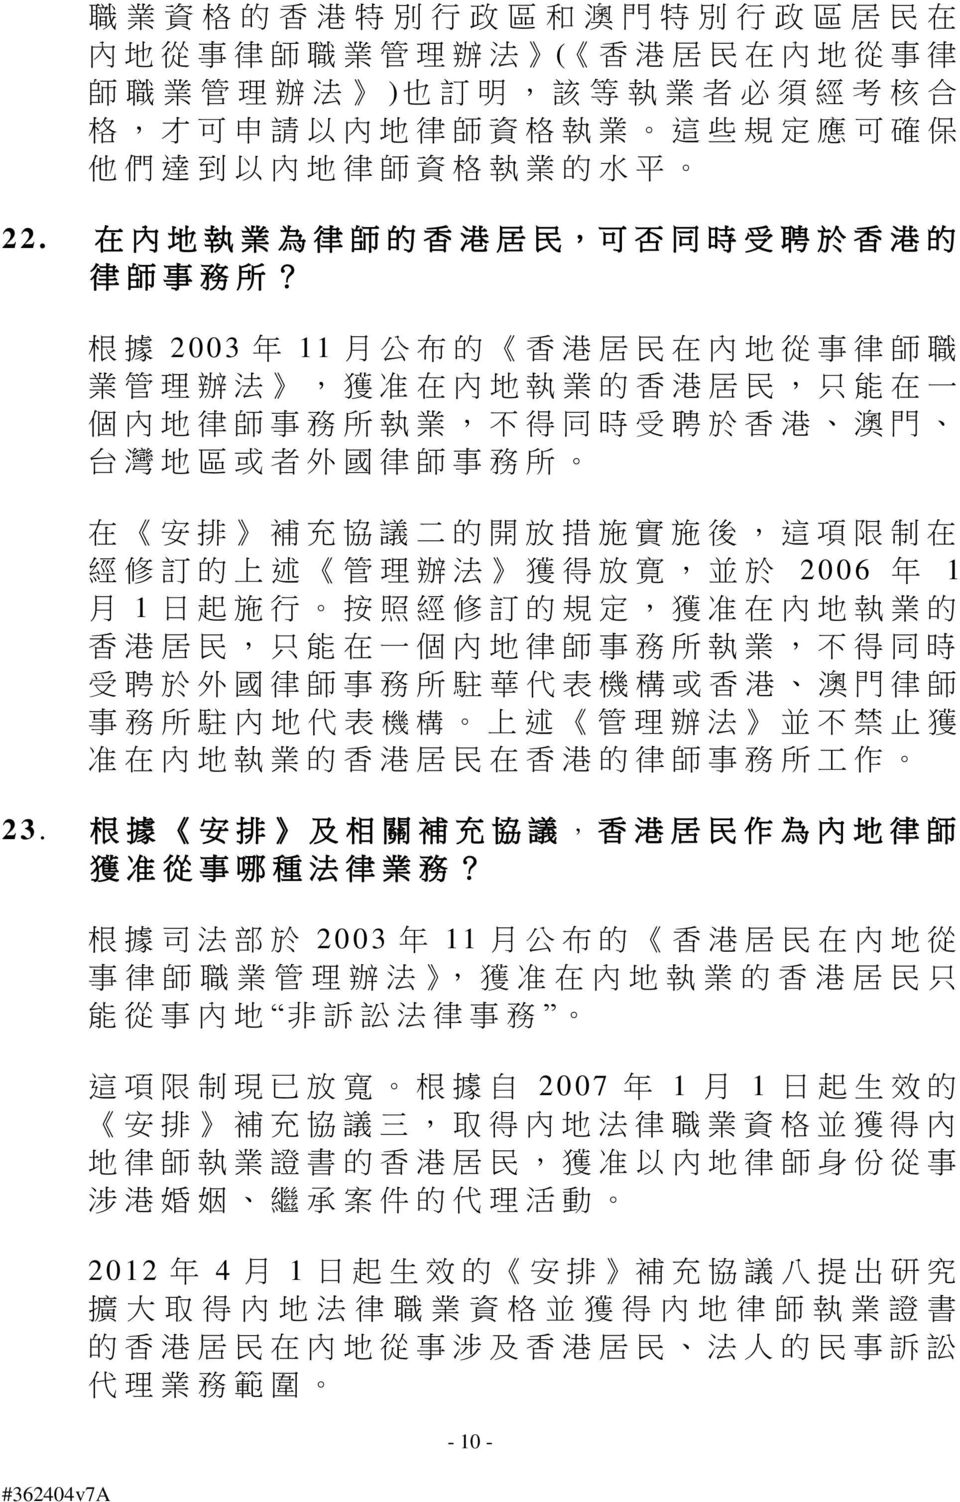 根 據 2003 年 11 月 公 布 的 香 港 居 民 在 內 地 從 事 律 師 職 業 管 理 辦 法, 獲 准 在 內 地 執 業 的 香 港 居 民, 只 能 在 一 個 內 地 律 師 事 務 所 執 業, 不 得 同 時 受 聘 於 香 港 澳 門 台 灣 地 區 或 者 外 國 律 師 事 務 所 在 安 排 補 充 協 議 二 的 開 放 措 施 實 施 後, 這 項 限 制